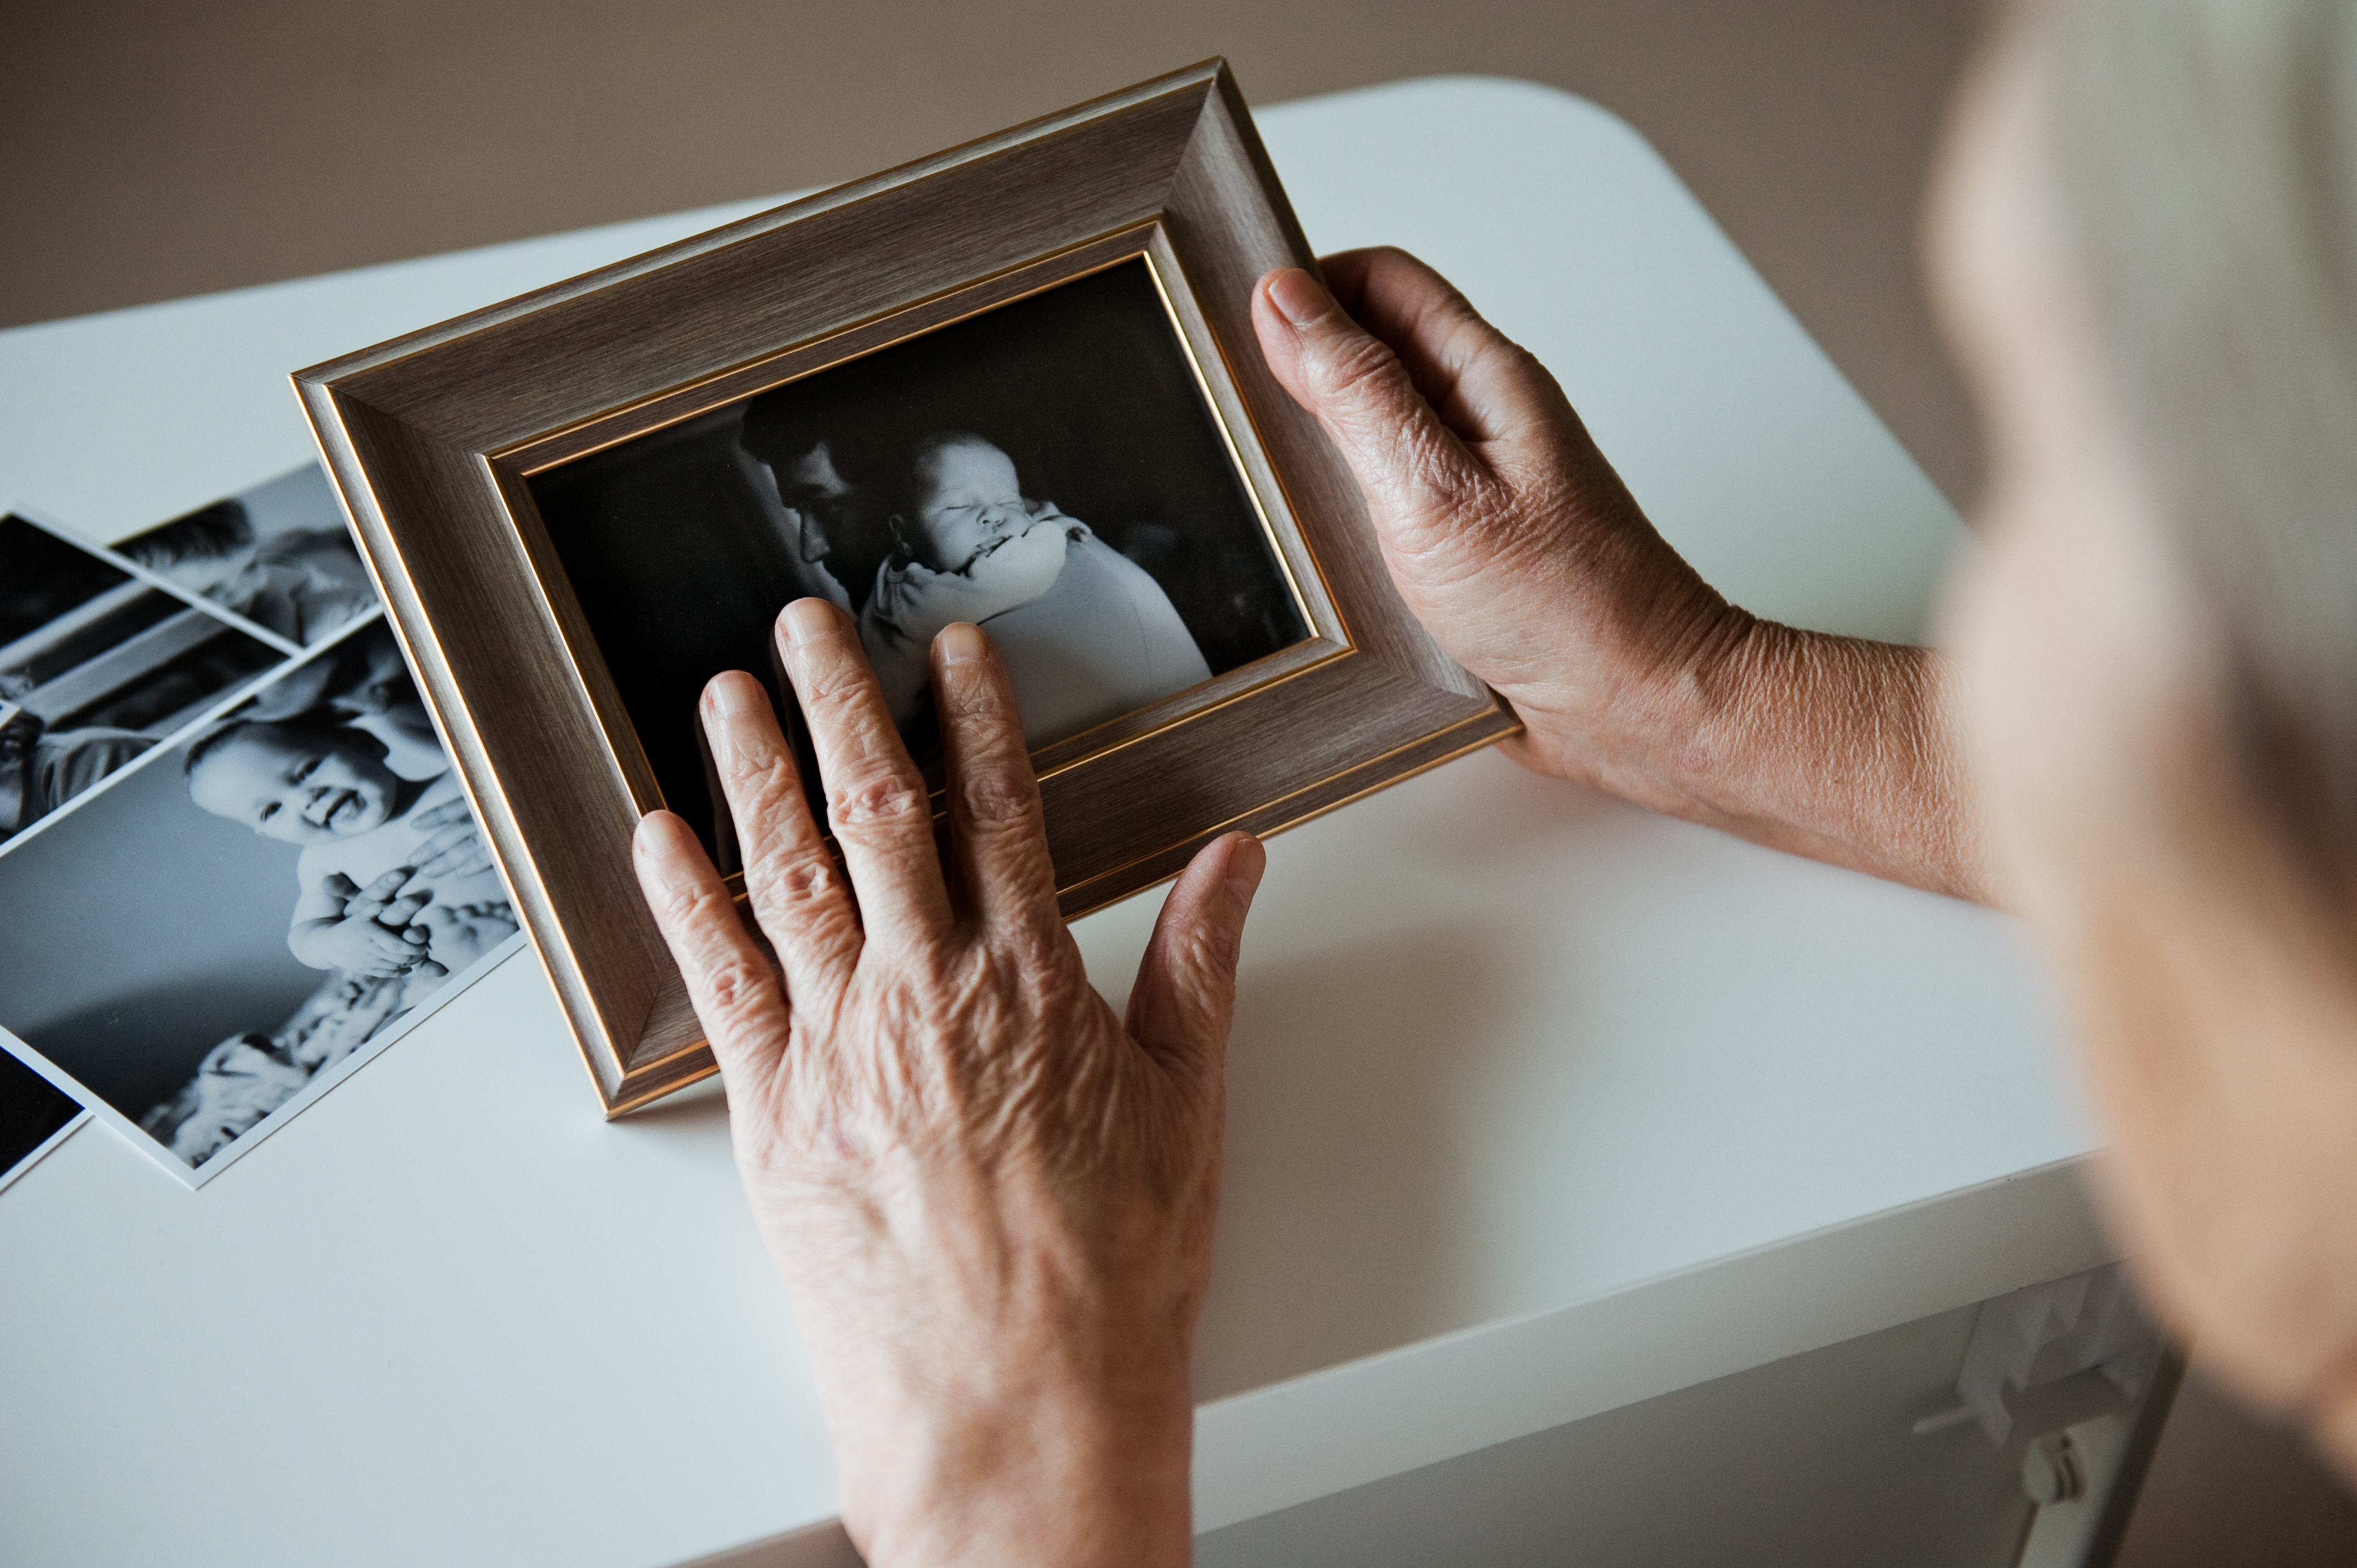 An elderly woman holding a photo frame | Source: Shutterstock